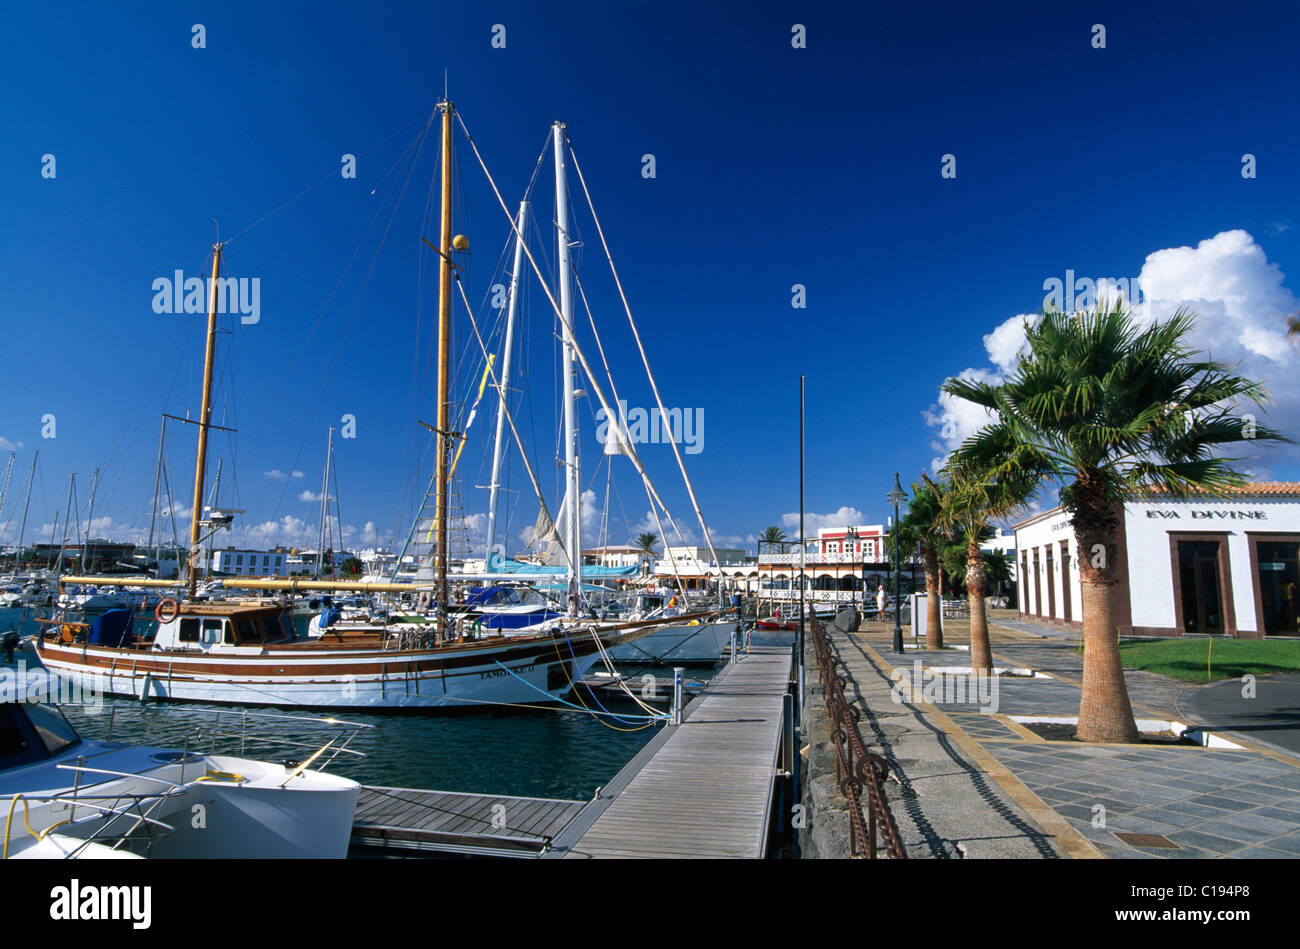 Bateaux à voile à Playa Blanca, Lanzarote, Canary Islands, Spain, Europe Banque D'Images